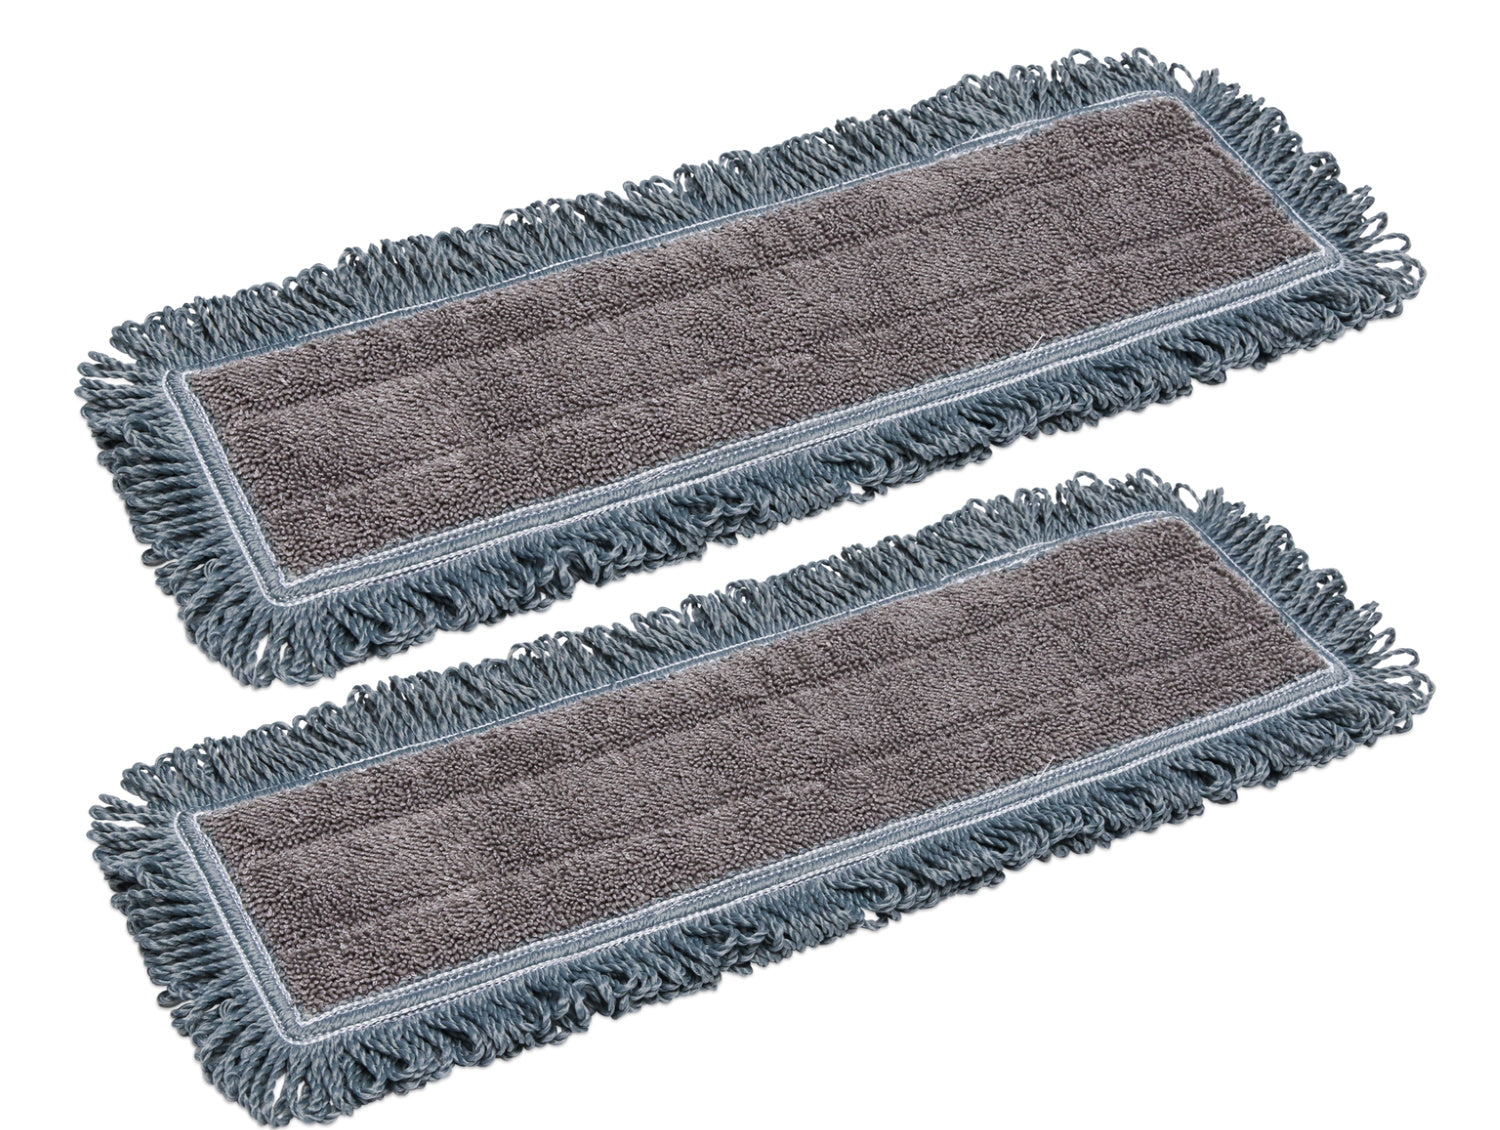 Almohadillas para mopa de microfibra Buff™ bamboo de 18" - Paquete de 2 unidades